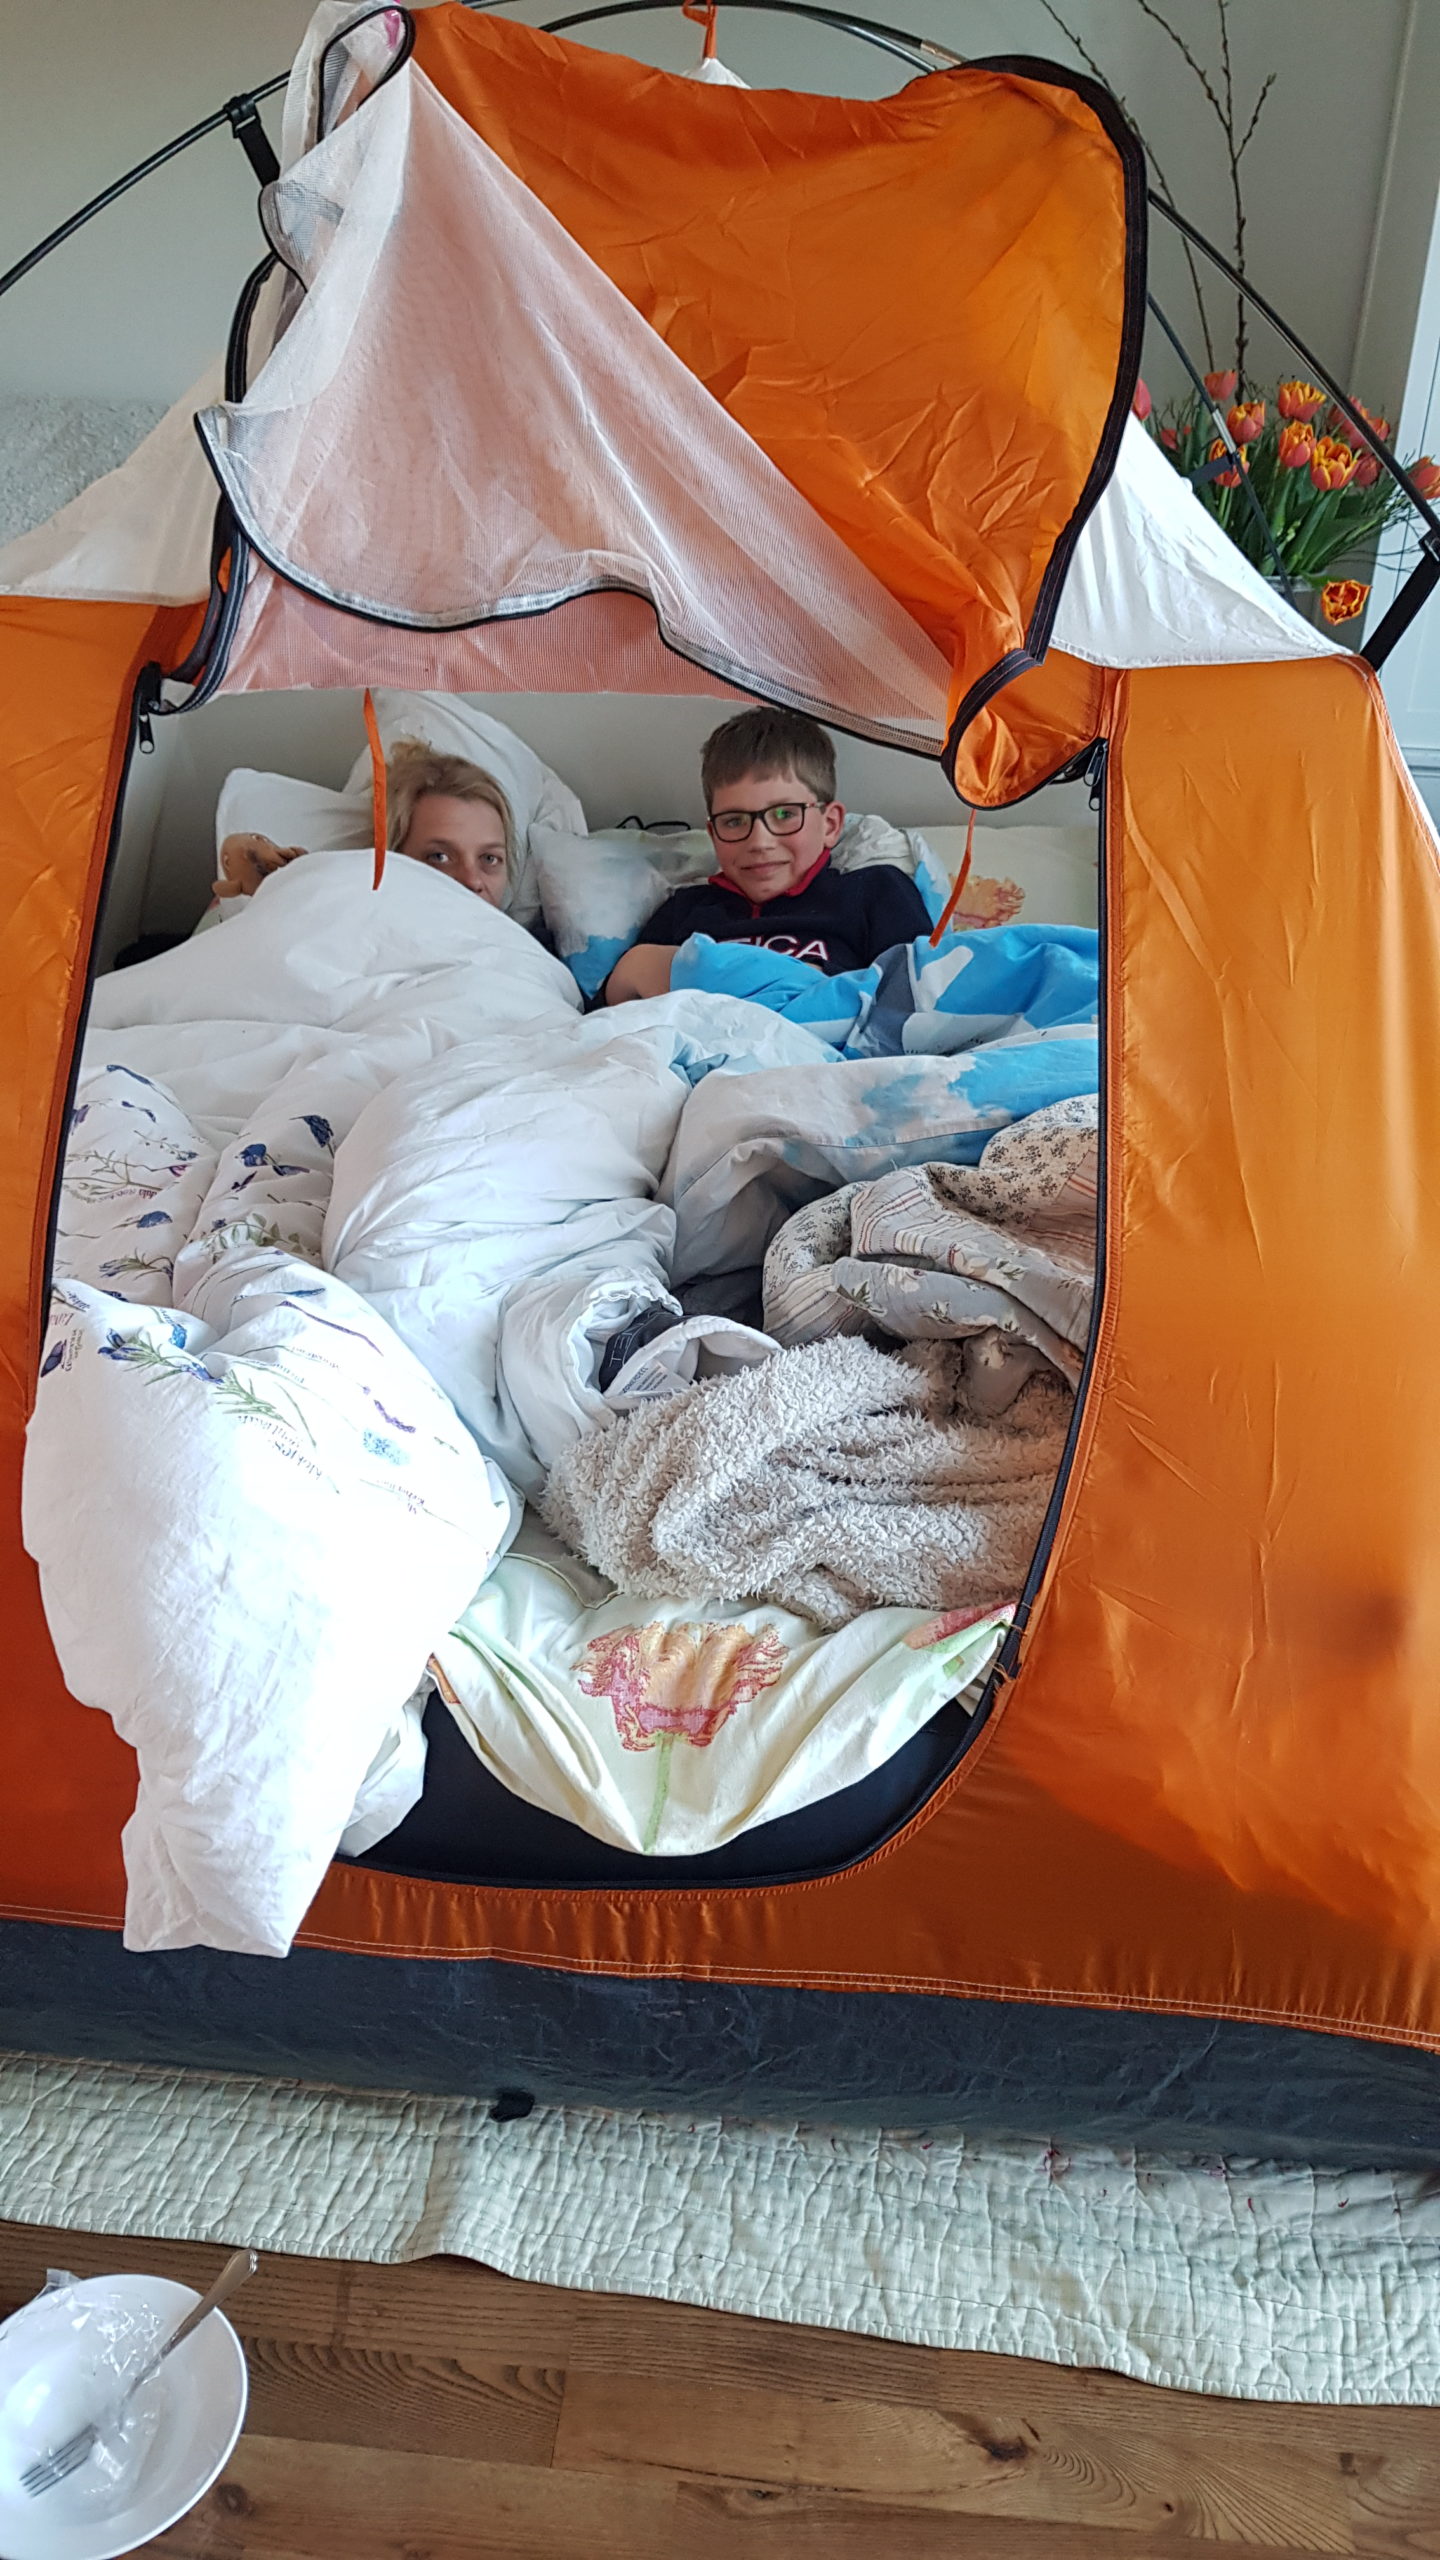 excuus spel Boodschapper Thuis kamperen / kamperen in huis ❤️ GewoonKamperen.nl